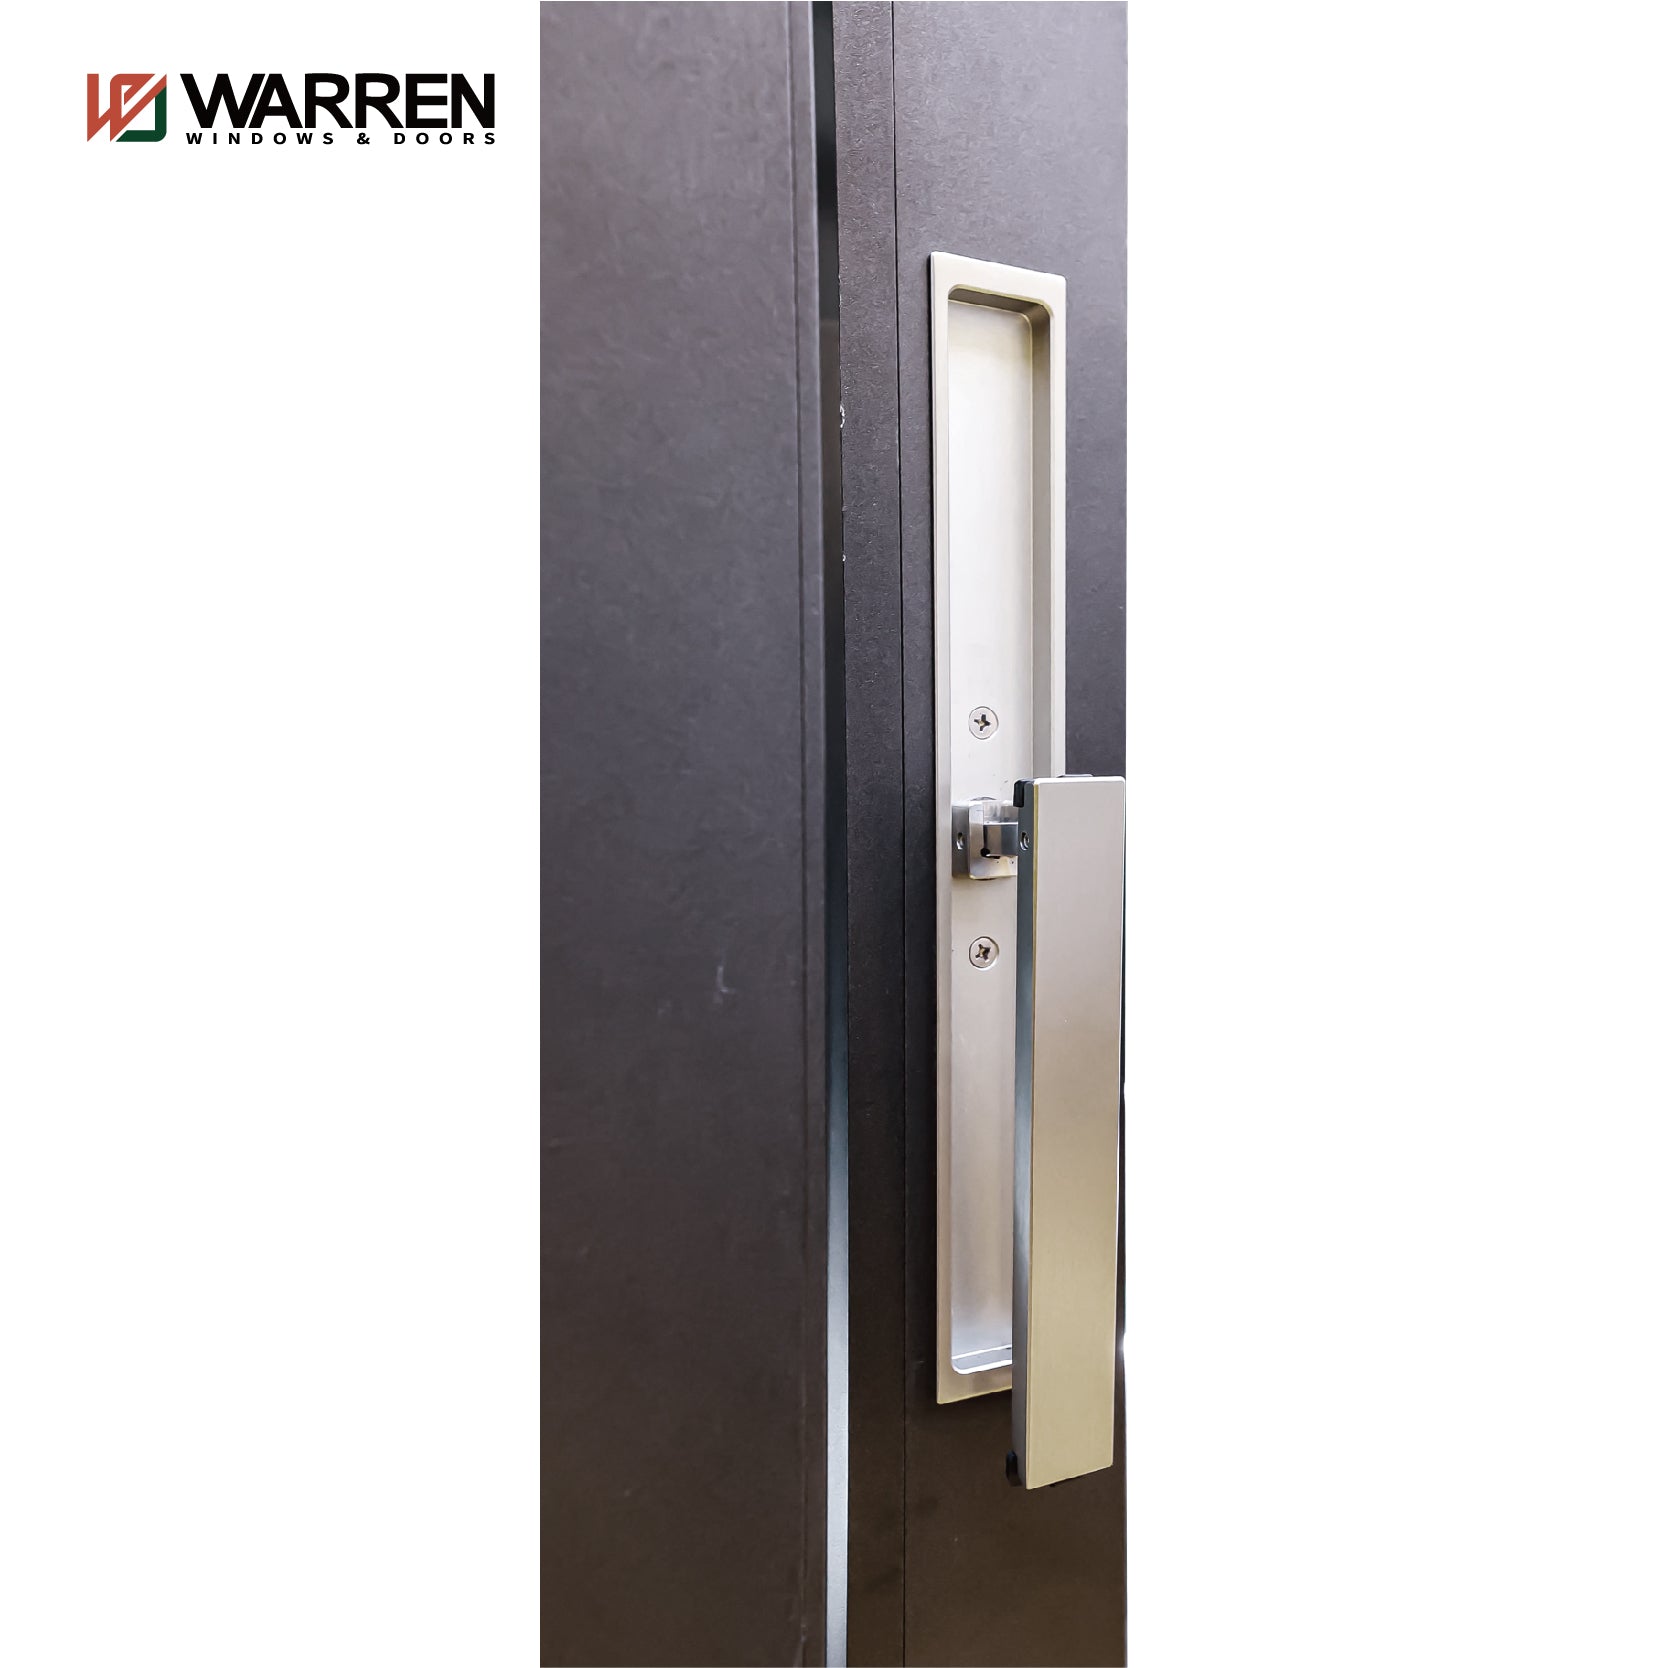 Warren Thermal Break House Exterior  Aluminium Profiles Glass Window And Door Heavy Duty Patio Sliding Doors